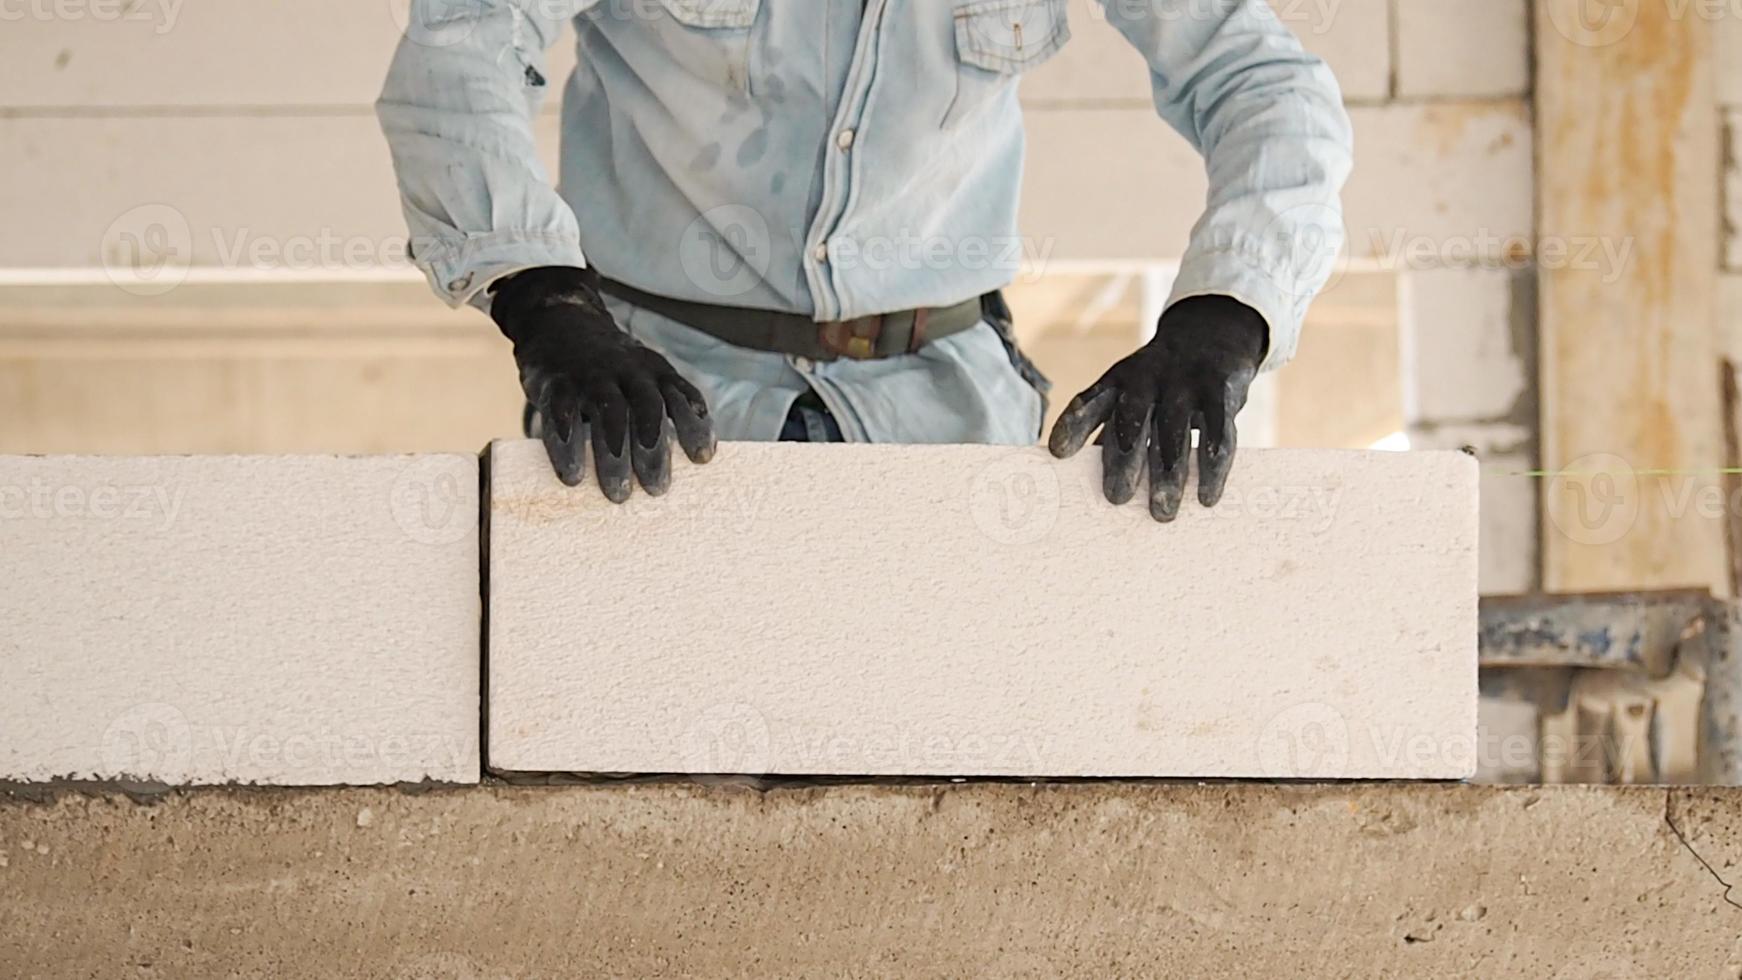 konstruktion arbetare är framställning vit lättvikt betong block den där är bättre än cement tegelstenar, populär i de konstruktion av hem och offentlig byggnader. foto